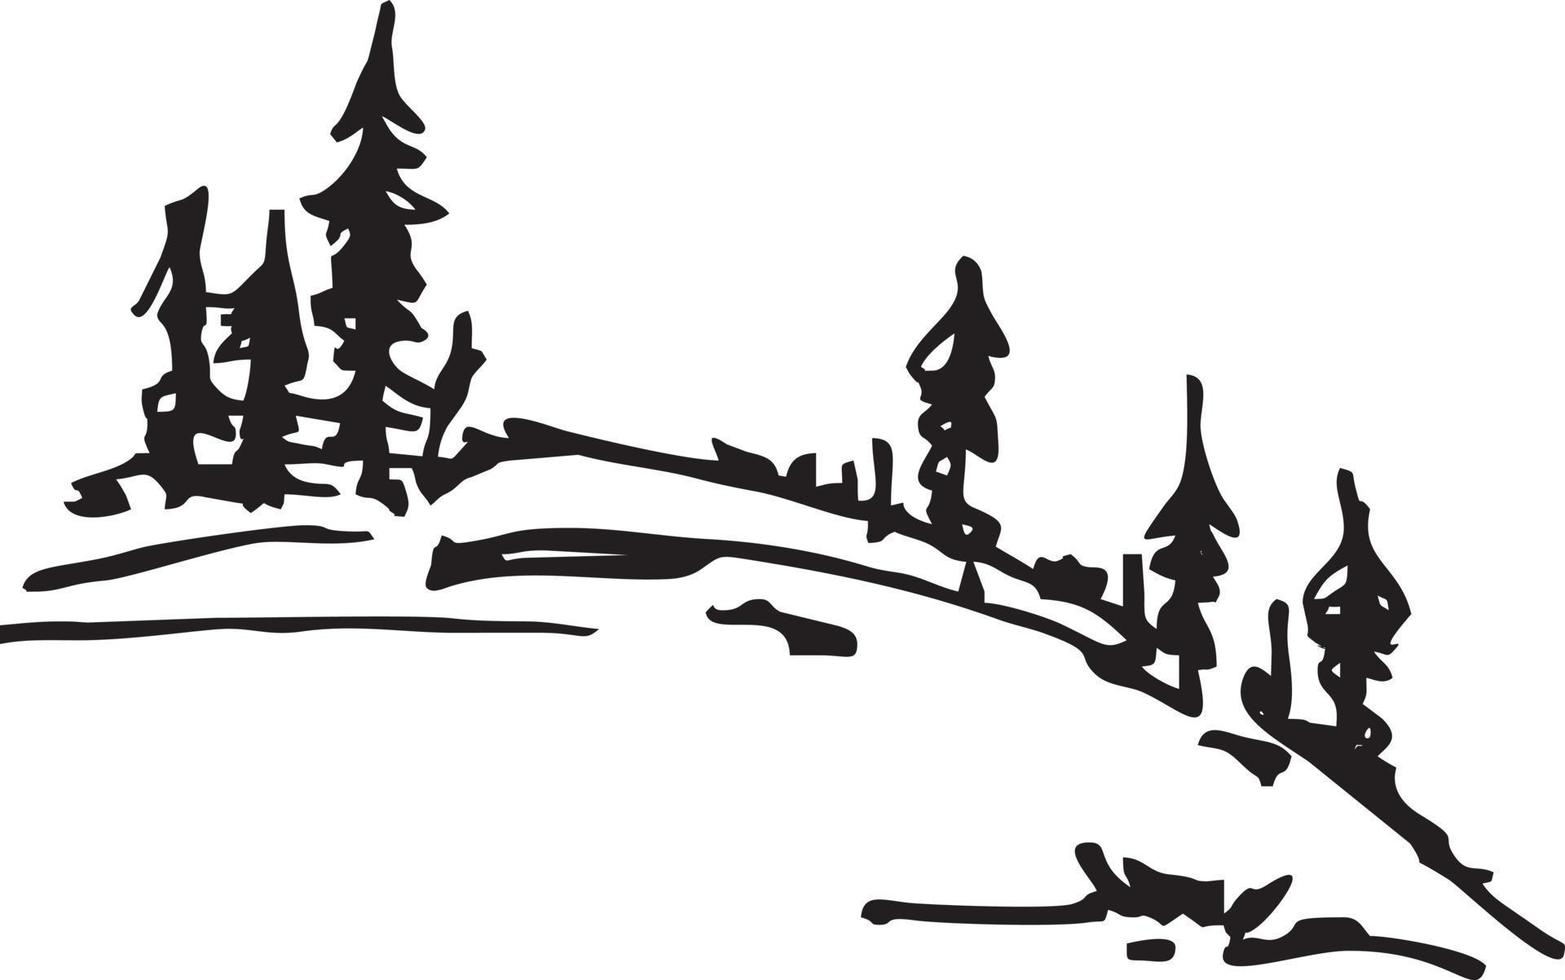 árboles coníferos en el bosquejo de la colina. abetos o pinos en una colina silueta paisaje natural en blanco y negro. bueno para logo, ilustración, estampado en ropa vector